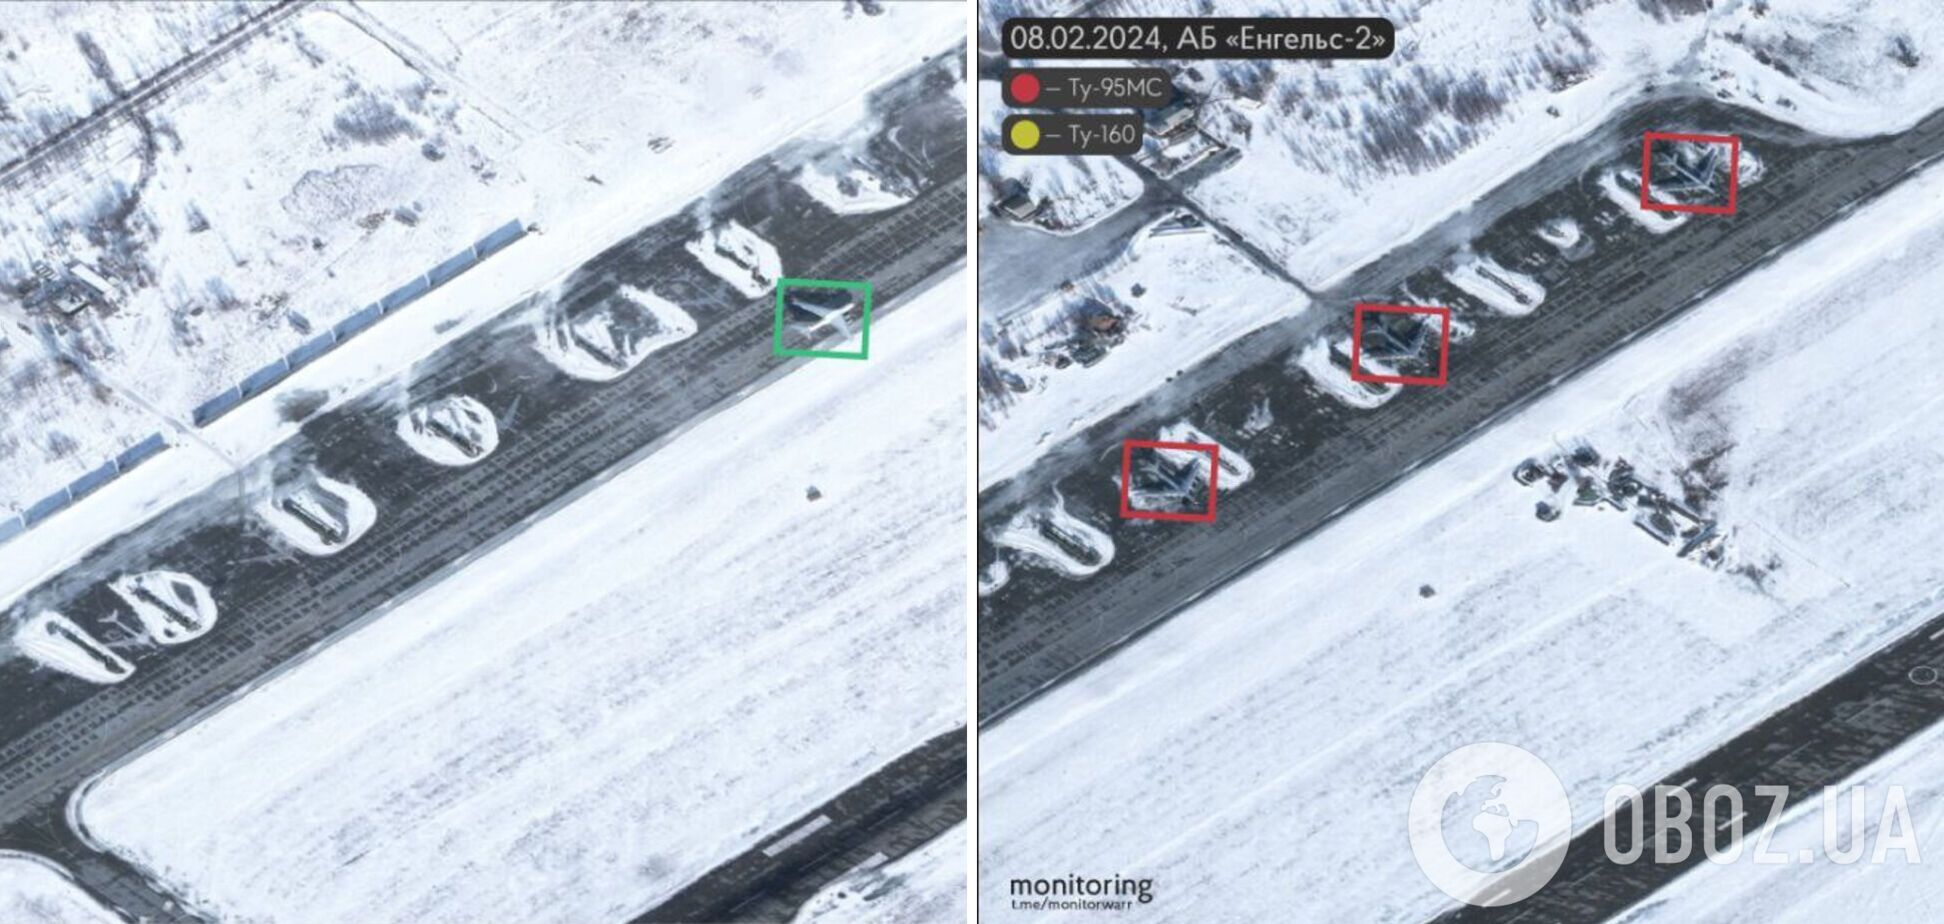 11 літаків-ракетоносців у режимі очікування: у мережі з'явились супутникові знімки аеродрому 'Енгельс-2'. Фото